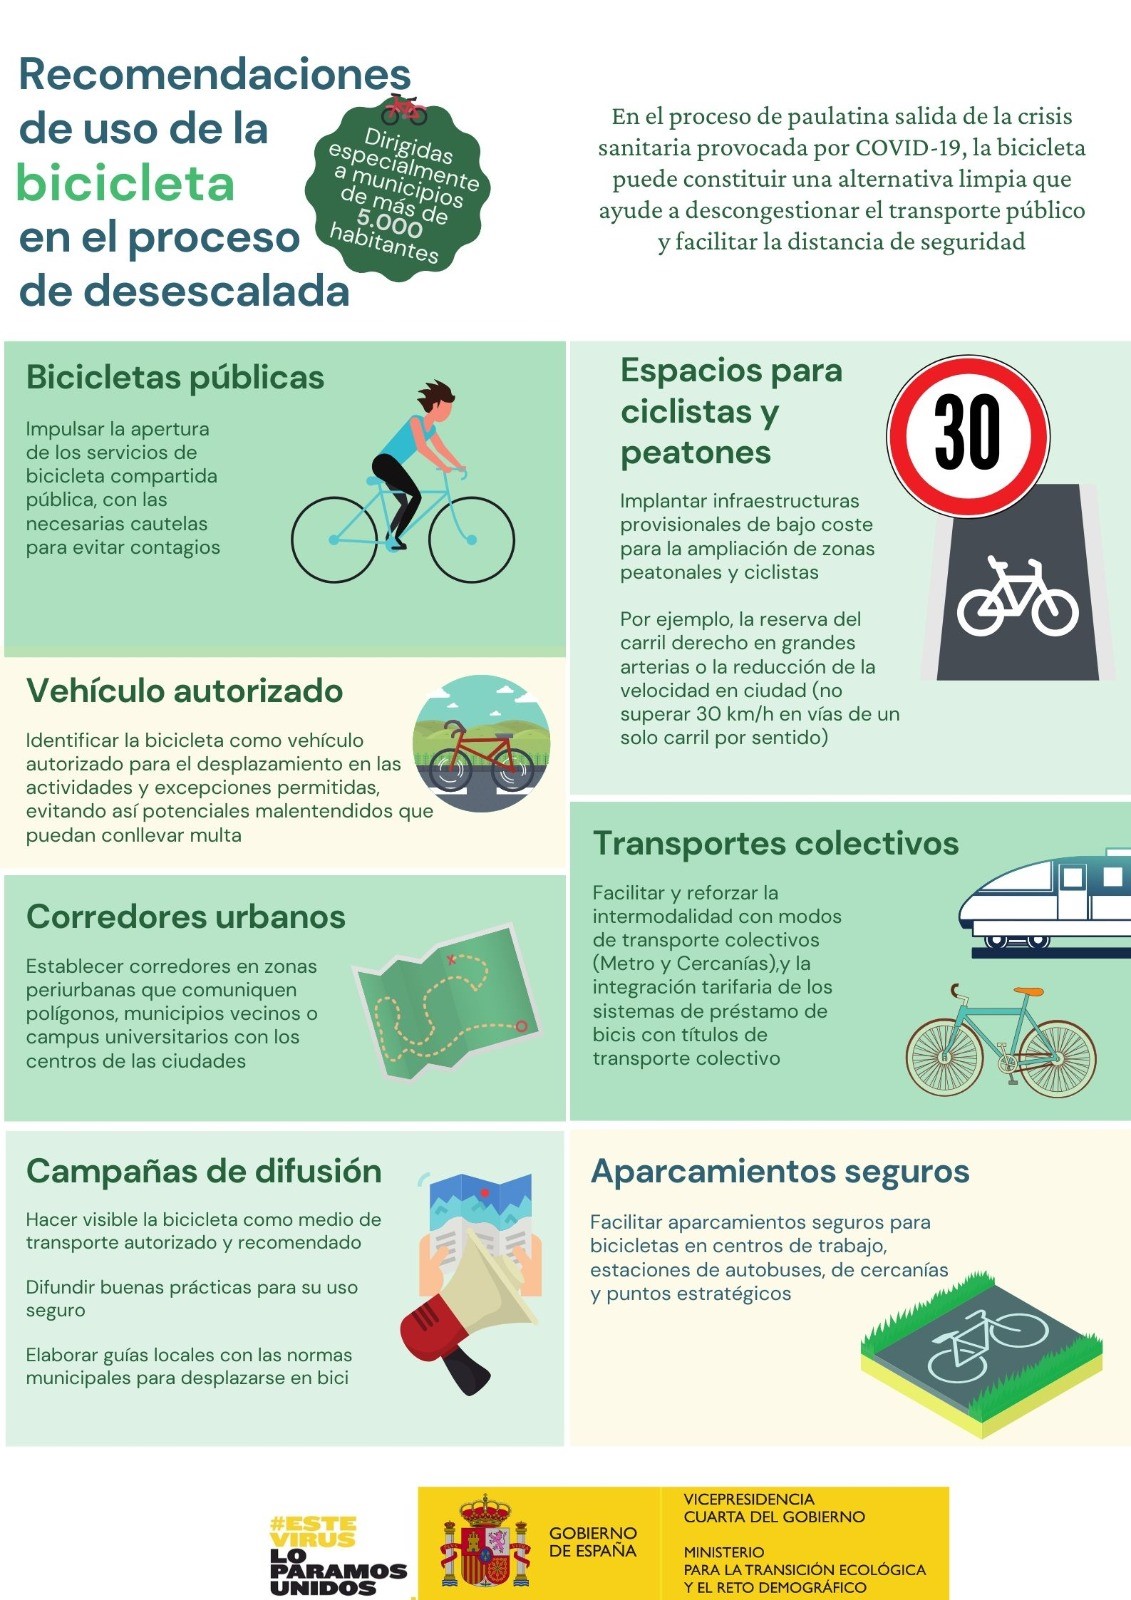 Recomendaciones para el uso de la bicicleta en la desescalada. Imagen: Miteco